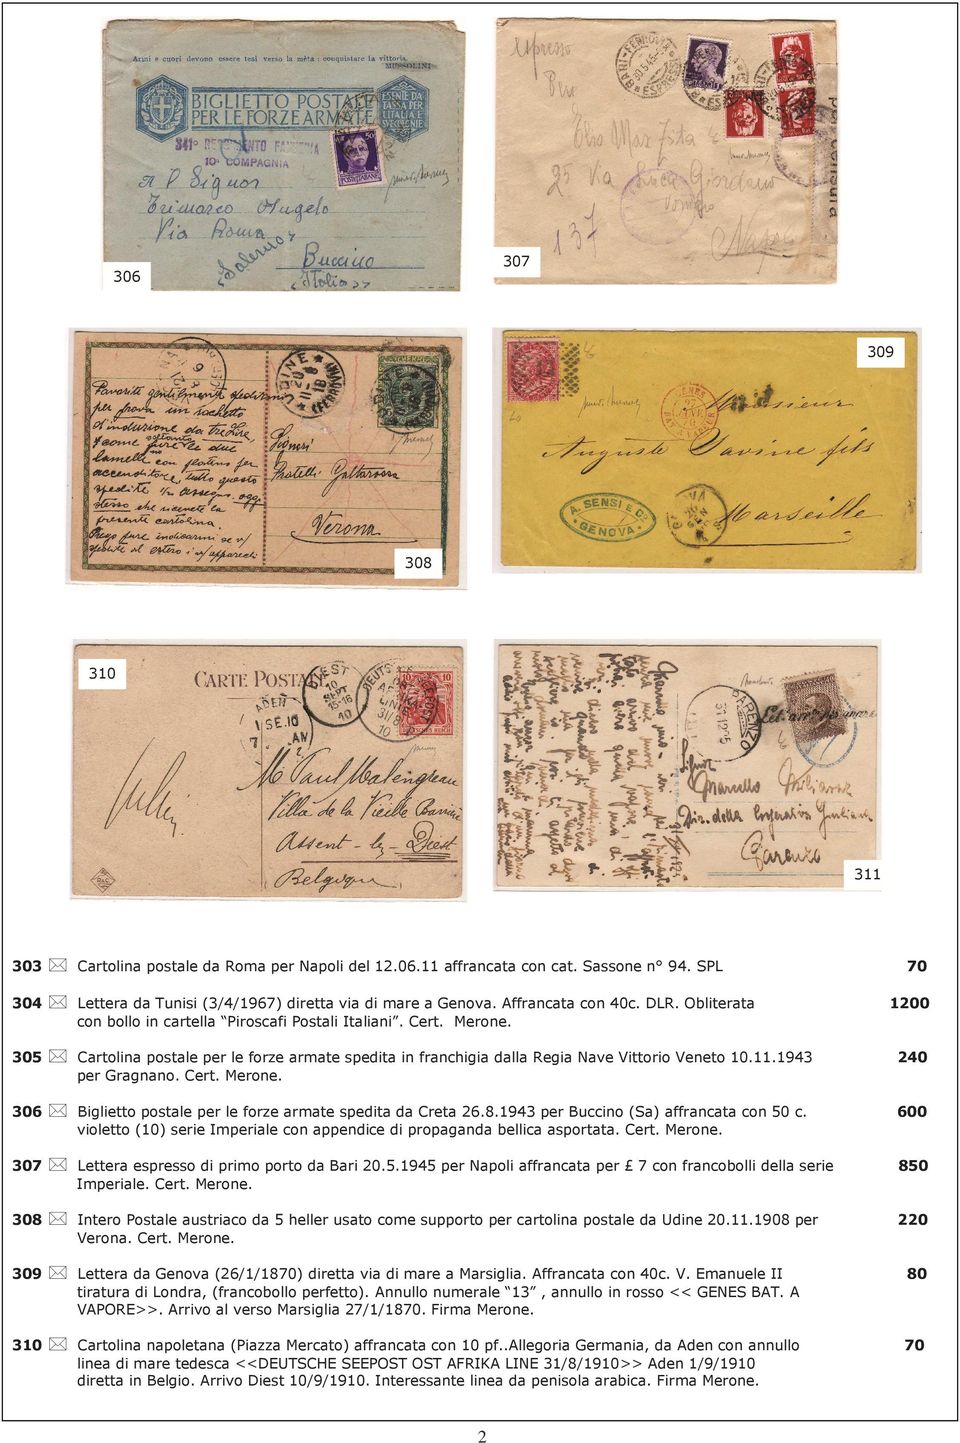 1943 240 per Gragnano. Cert. Merone. 306 Biglietto postale per le forze armate spedita da Creta 26.8.1943 per Buccino (Sa) affrancata con 50 c.